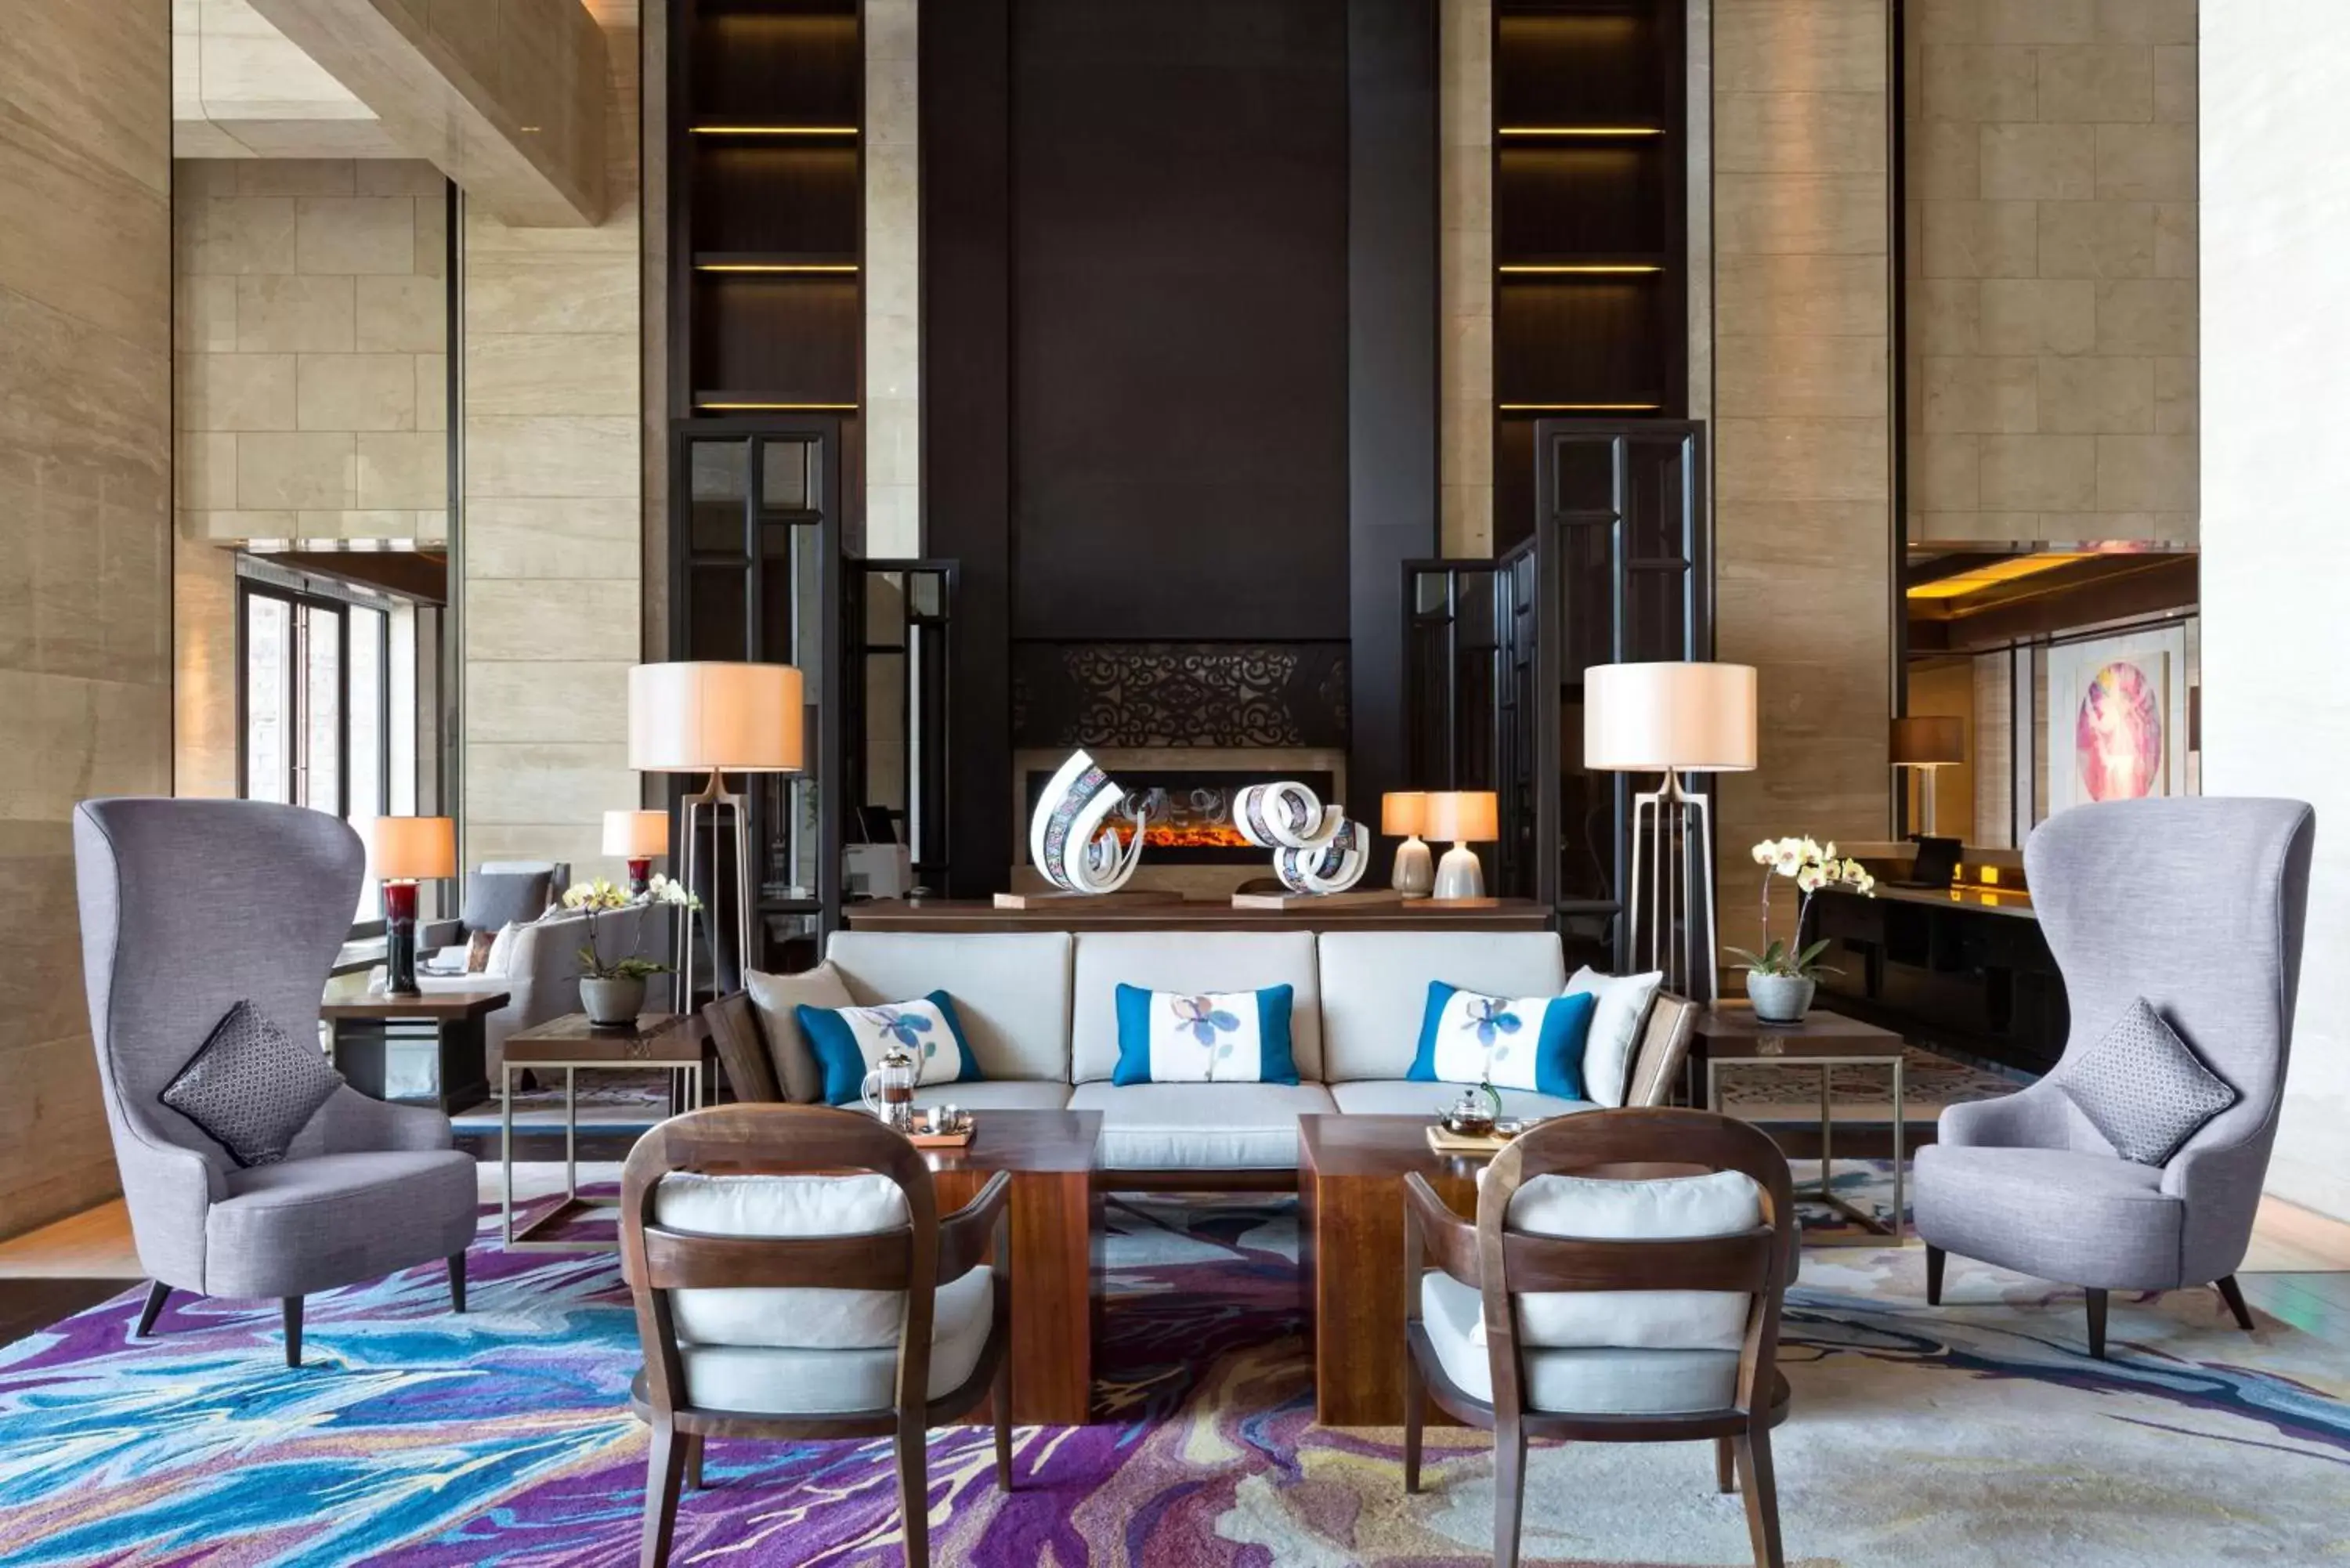 Lobby or reception in Hilton Dali Resort & Spa